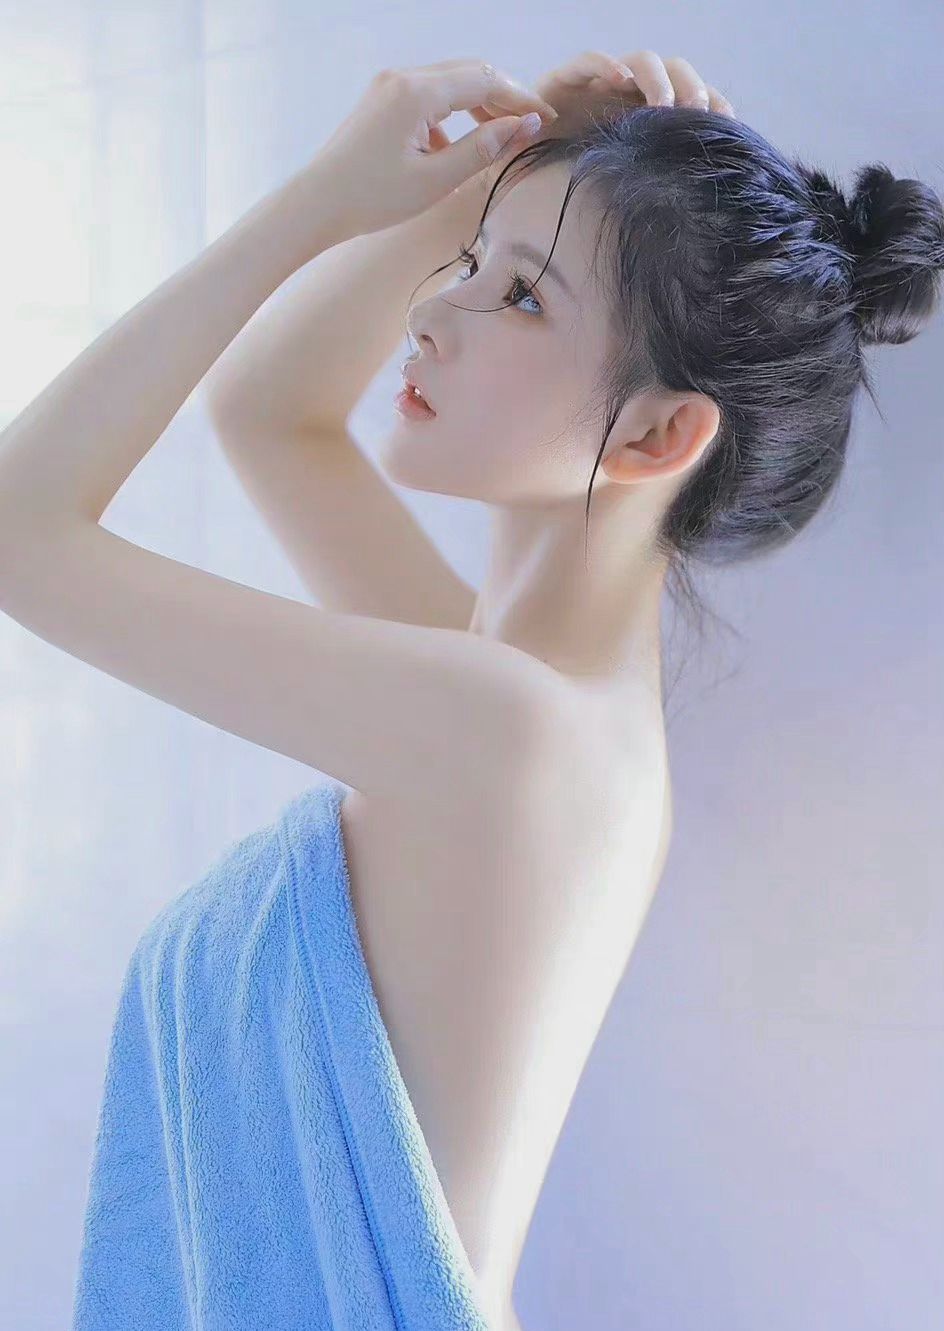 裹着蓝色浴巾的性感可爱少女浴室写真，丸子头，湿身，美背，曲线玲珑的少女魅力图片